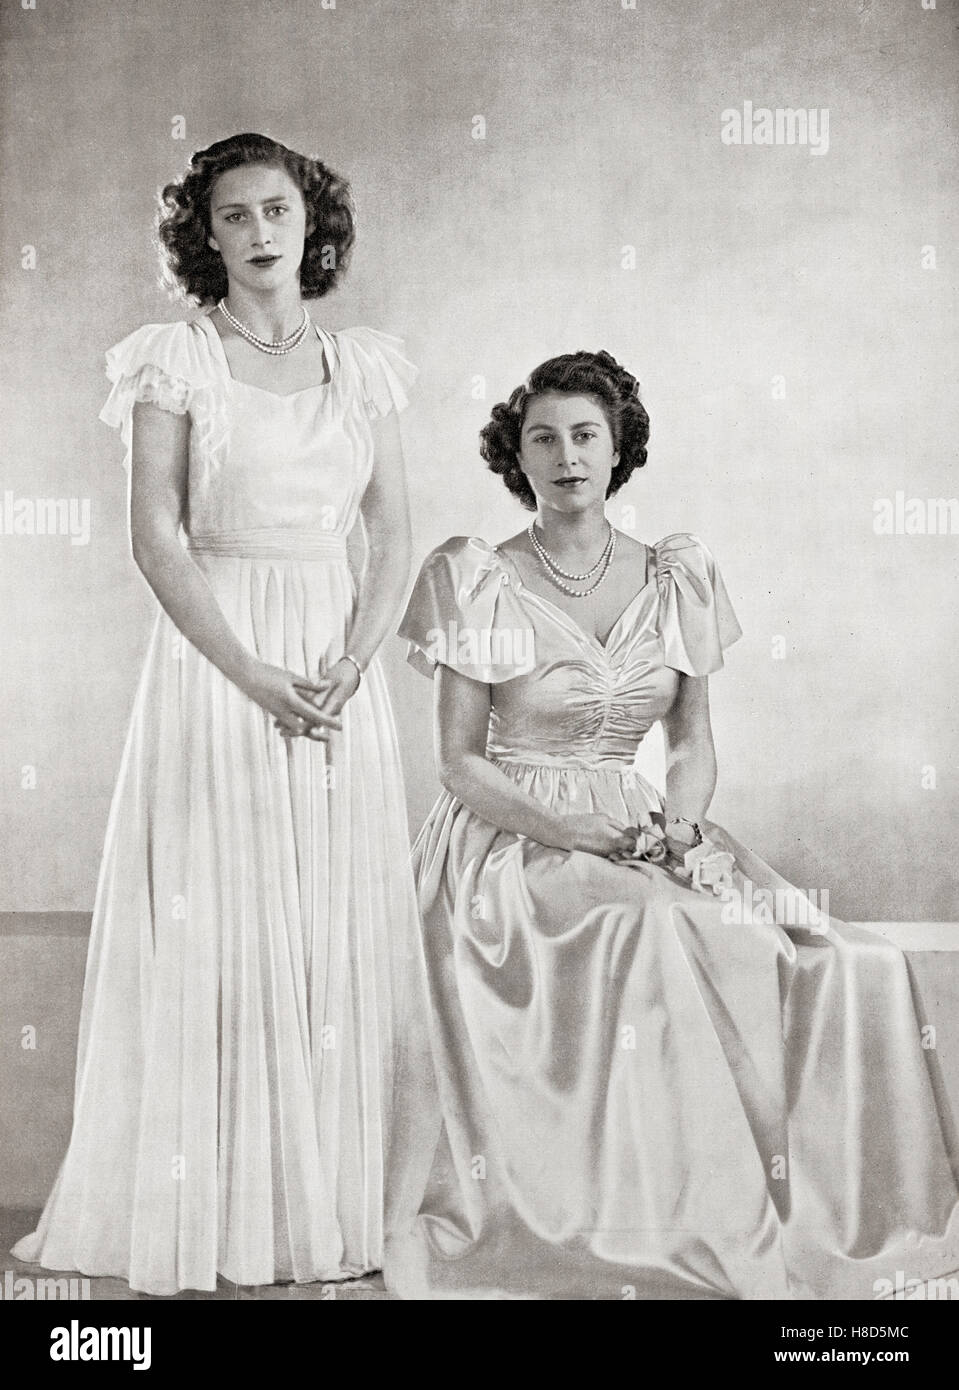 Prinzessin Margaret, links, und Prinzessin Elizabeth, zukünftige Königin Elizabeth II, rechts, im Jahr 1946. Prinzessin Margaret, Margaret Rose, 1930 – 2002, aka Prinzessin Margaret Rose. Jüngere Tochter von König Georg VI. Und Königin Elizabeth. Prinzessin Elizabeth, zukünftige Elizabeth II, 1926 - 2022. Königin des Vereinigten Königreichs, Kanada, Australien und Neuseeland. Stockfoto